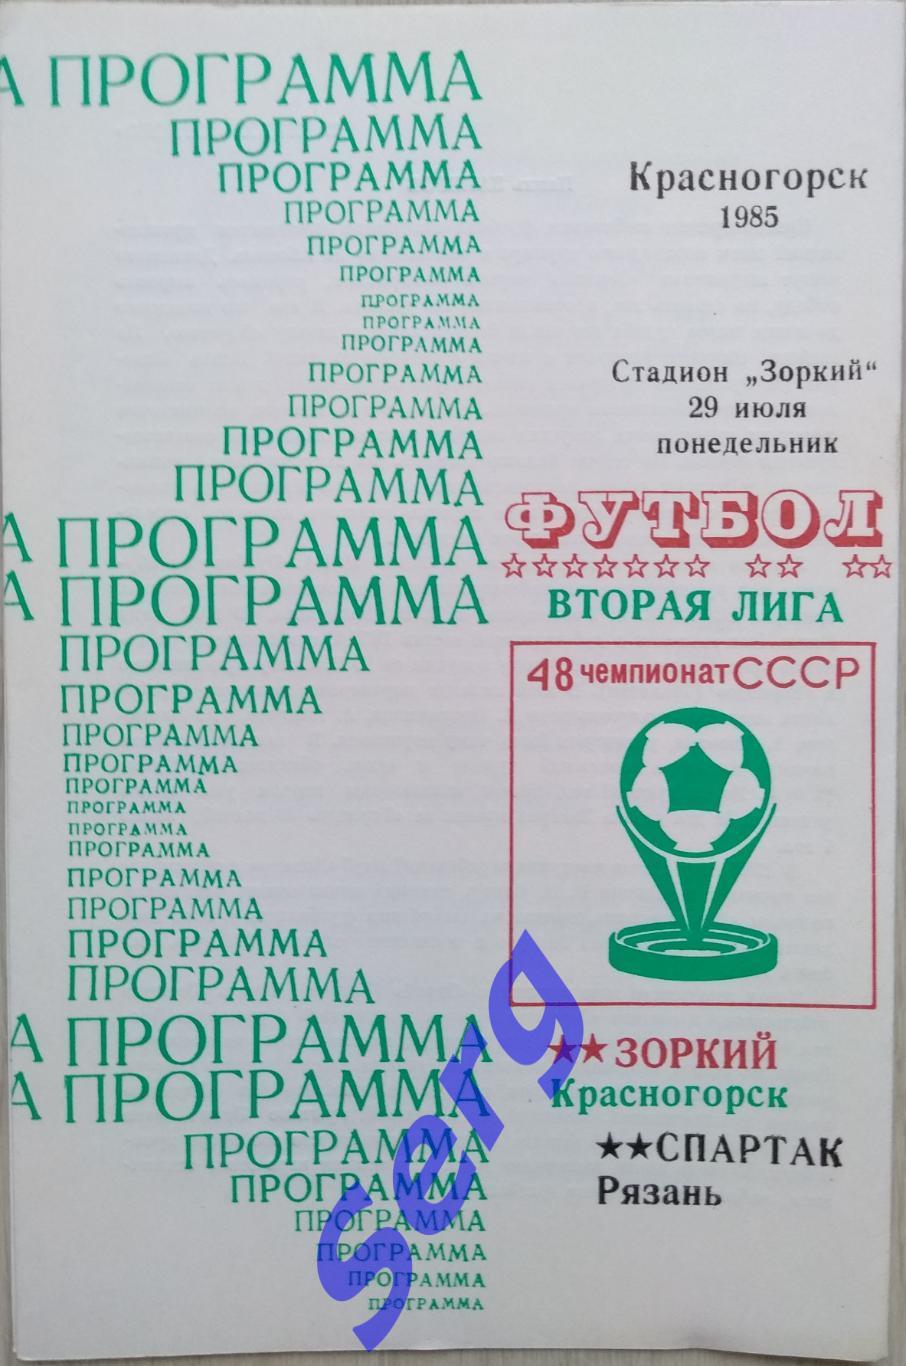 Зоркий Красногорск - Спартак Рязань - 29 июля 1985 год